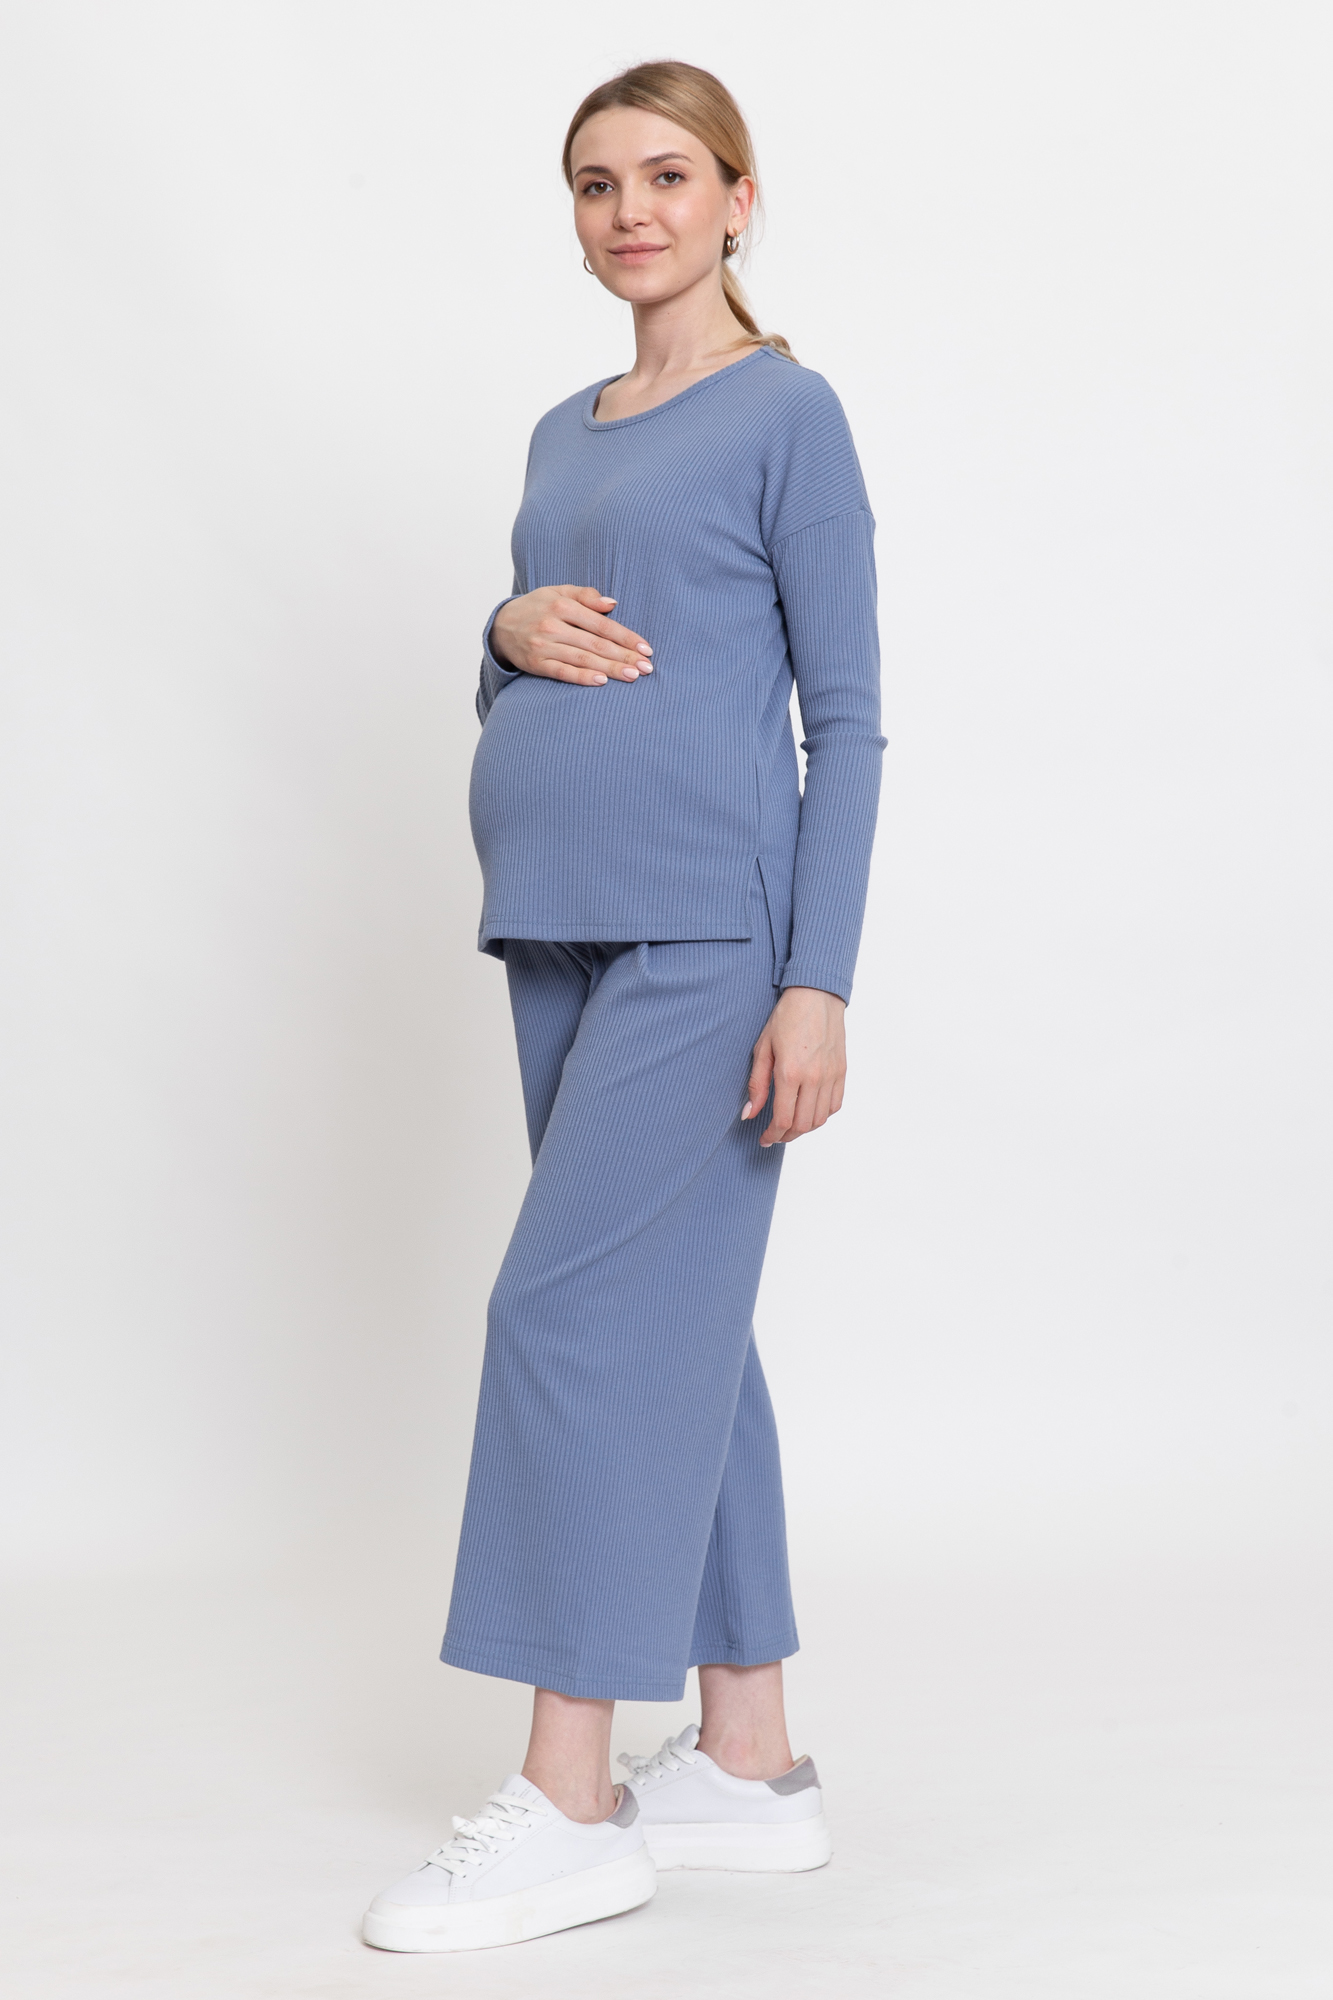 Костюм для беременных женский Magica bellezza 0184а голубой 46 RU